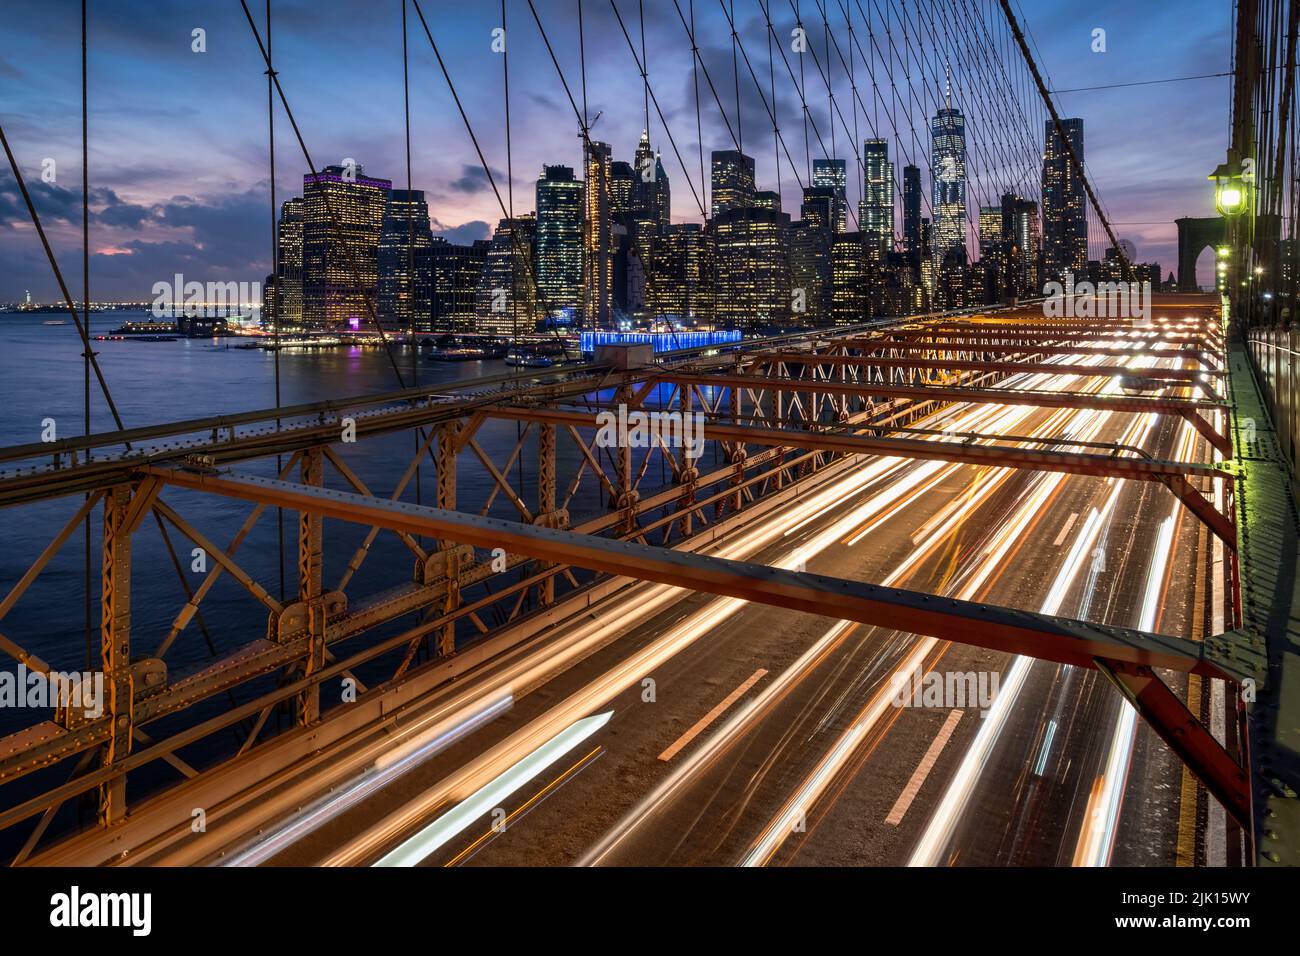 Trafic traversant le pont de Brooklyn et les gratte-ciel de Manhattan la nuit, Manhattan, New York, États-Unis d'Amérique, Amérique du Nord Banque D'Images